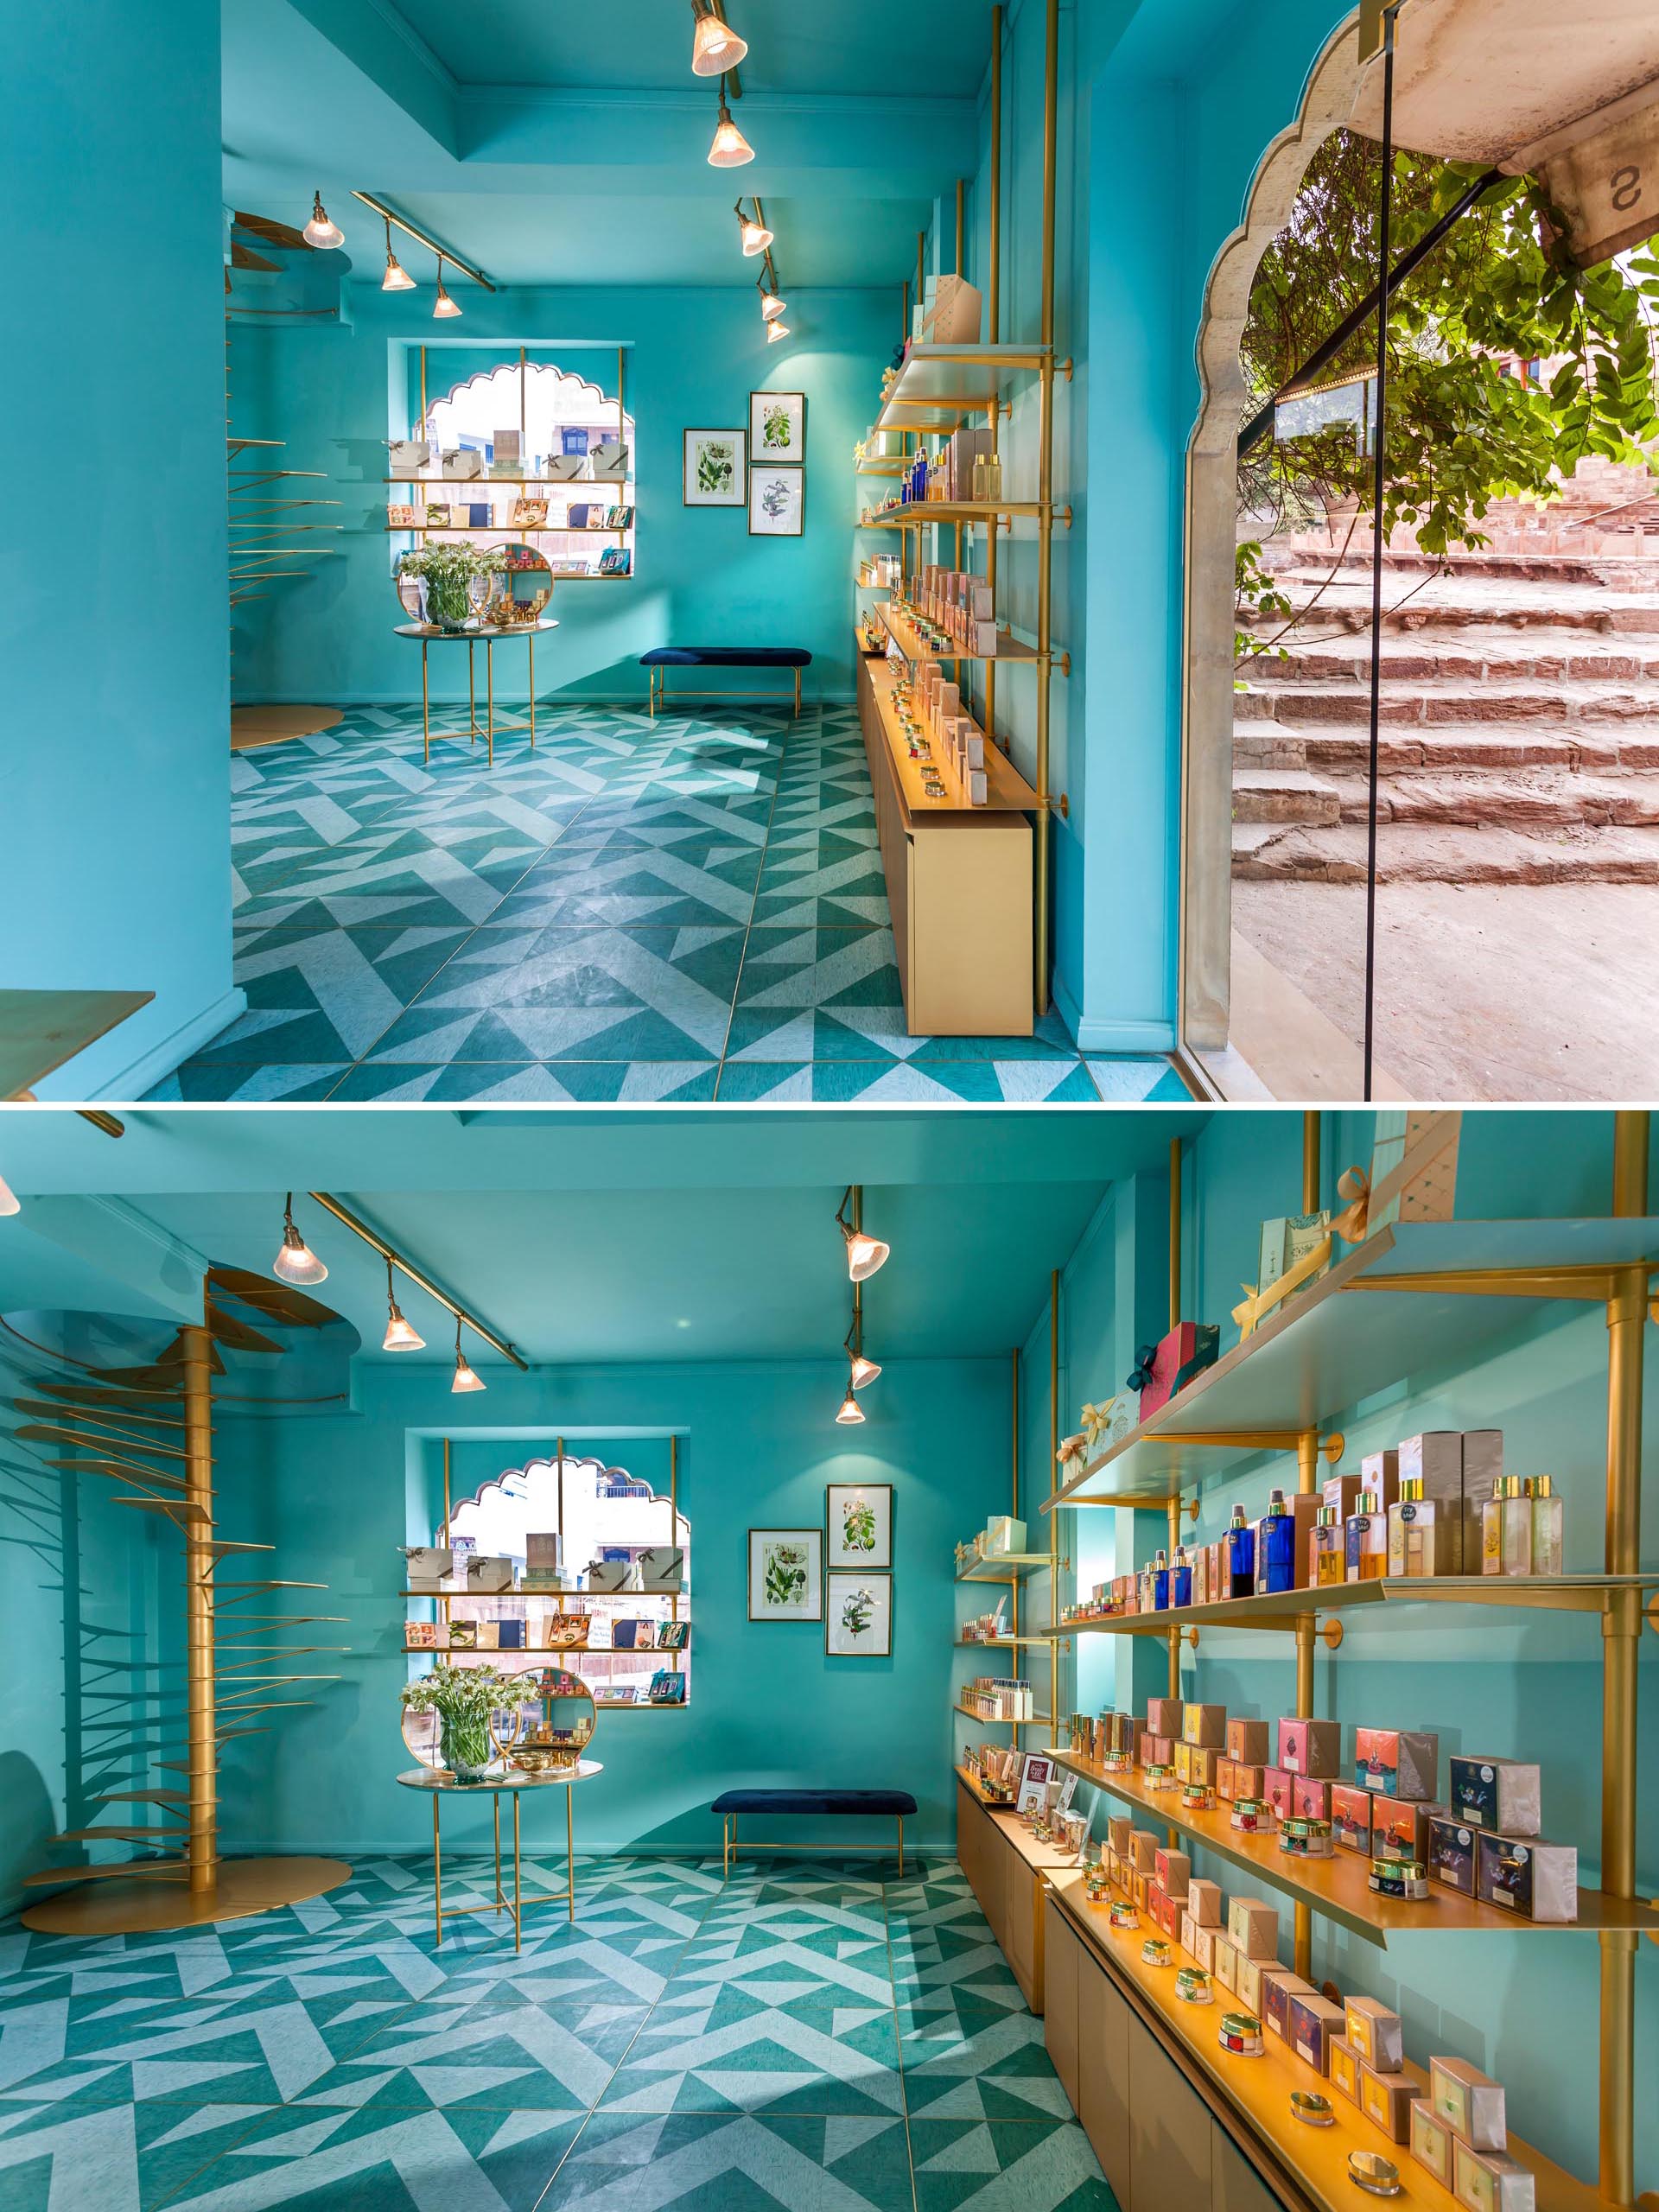 Современный розничный магазин с бирюзово-синими стенами, золотыми вставками и узорчатым линолеумом на полу.